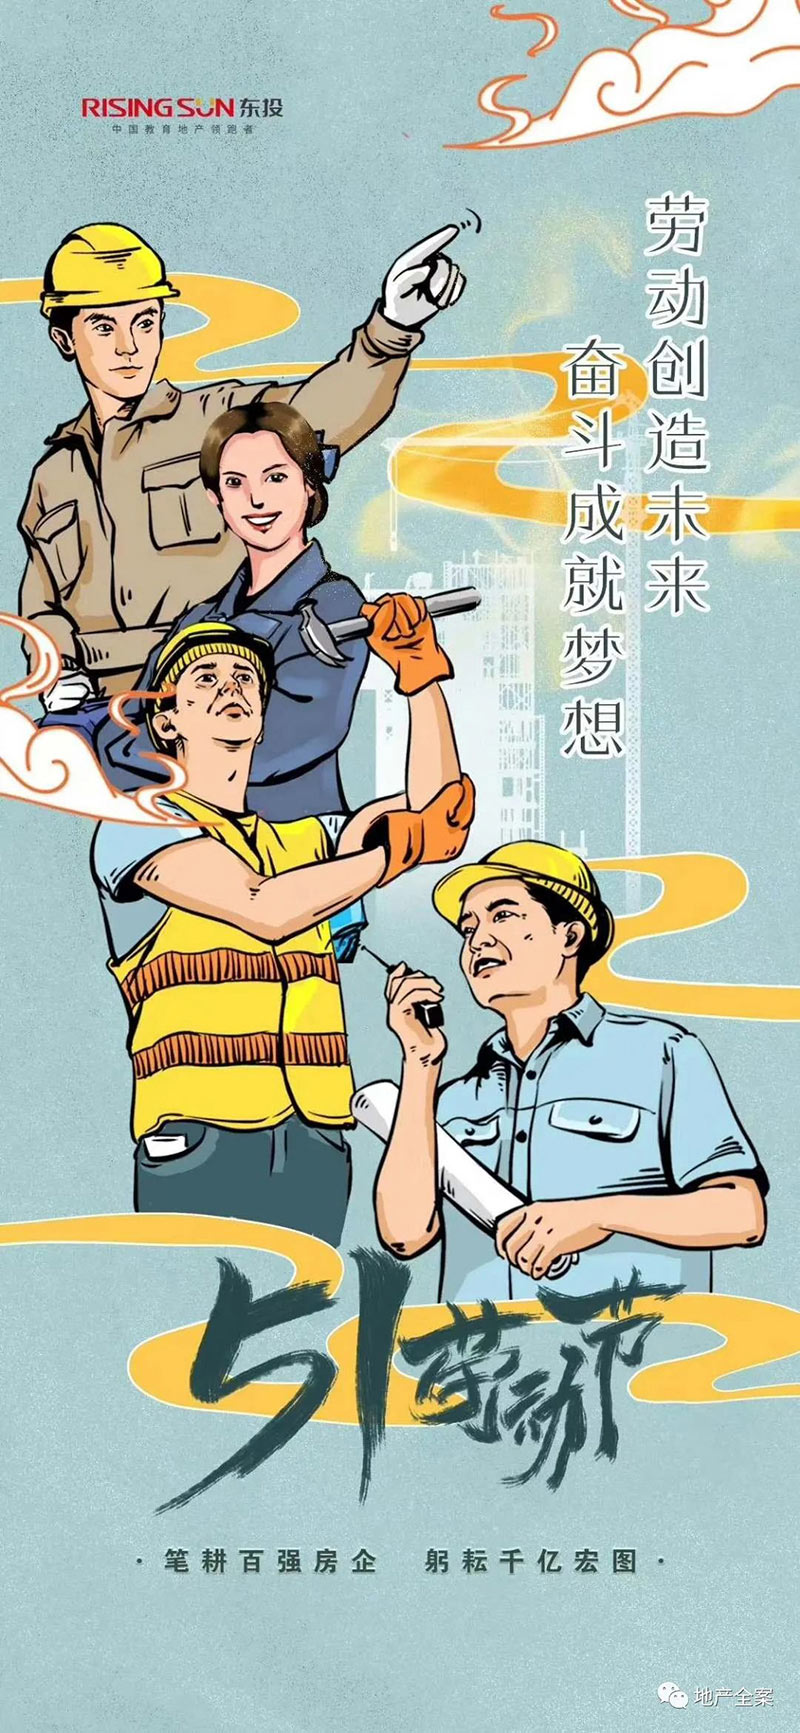 28款地产公司「五一劳动节」主题海报来袭！